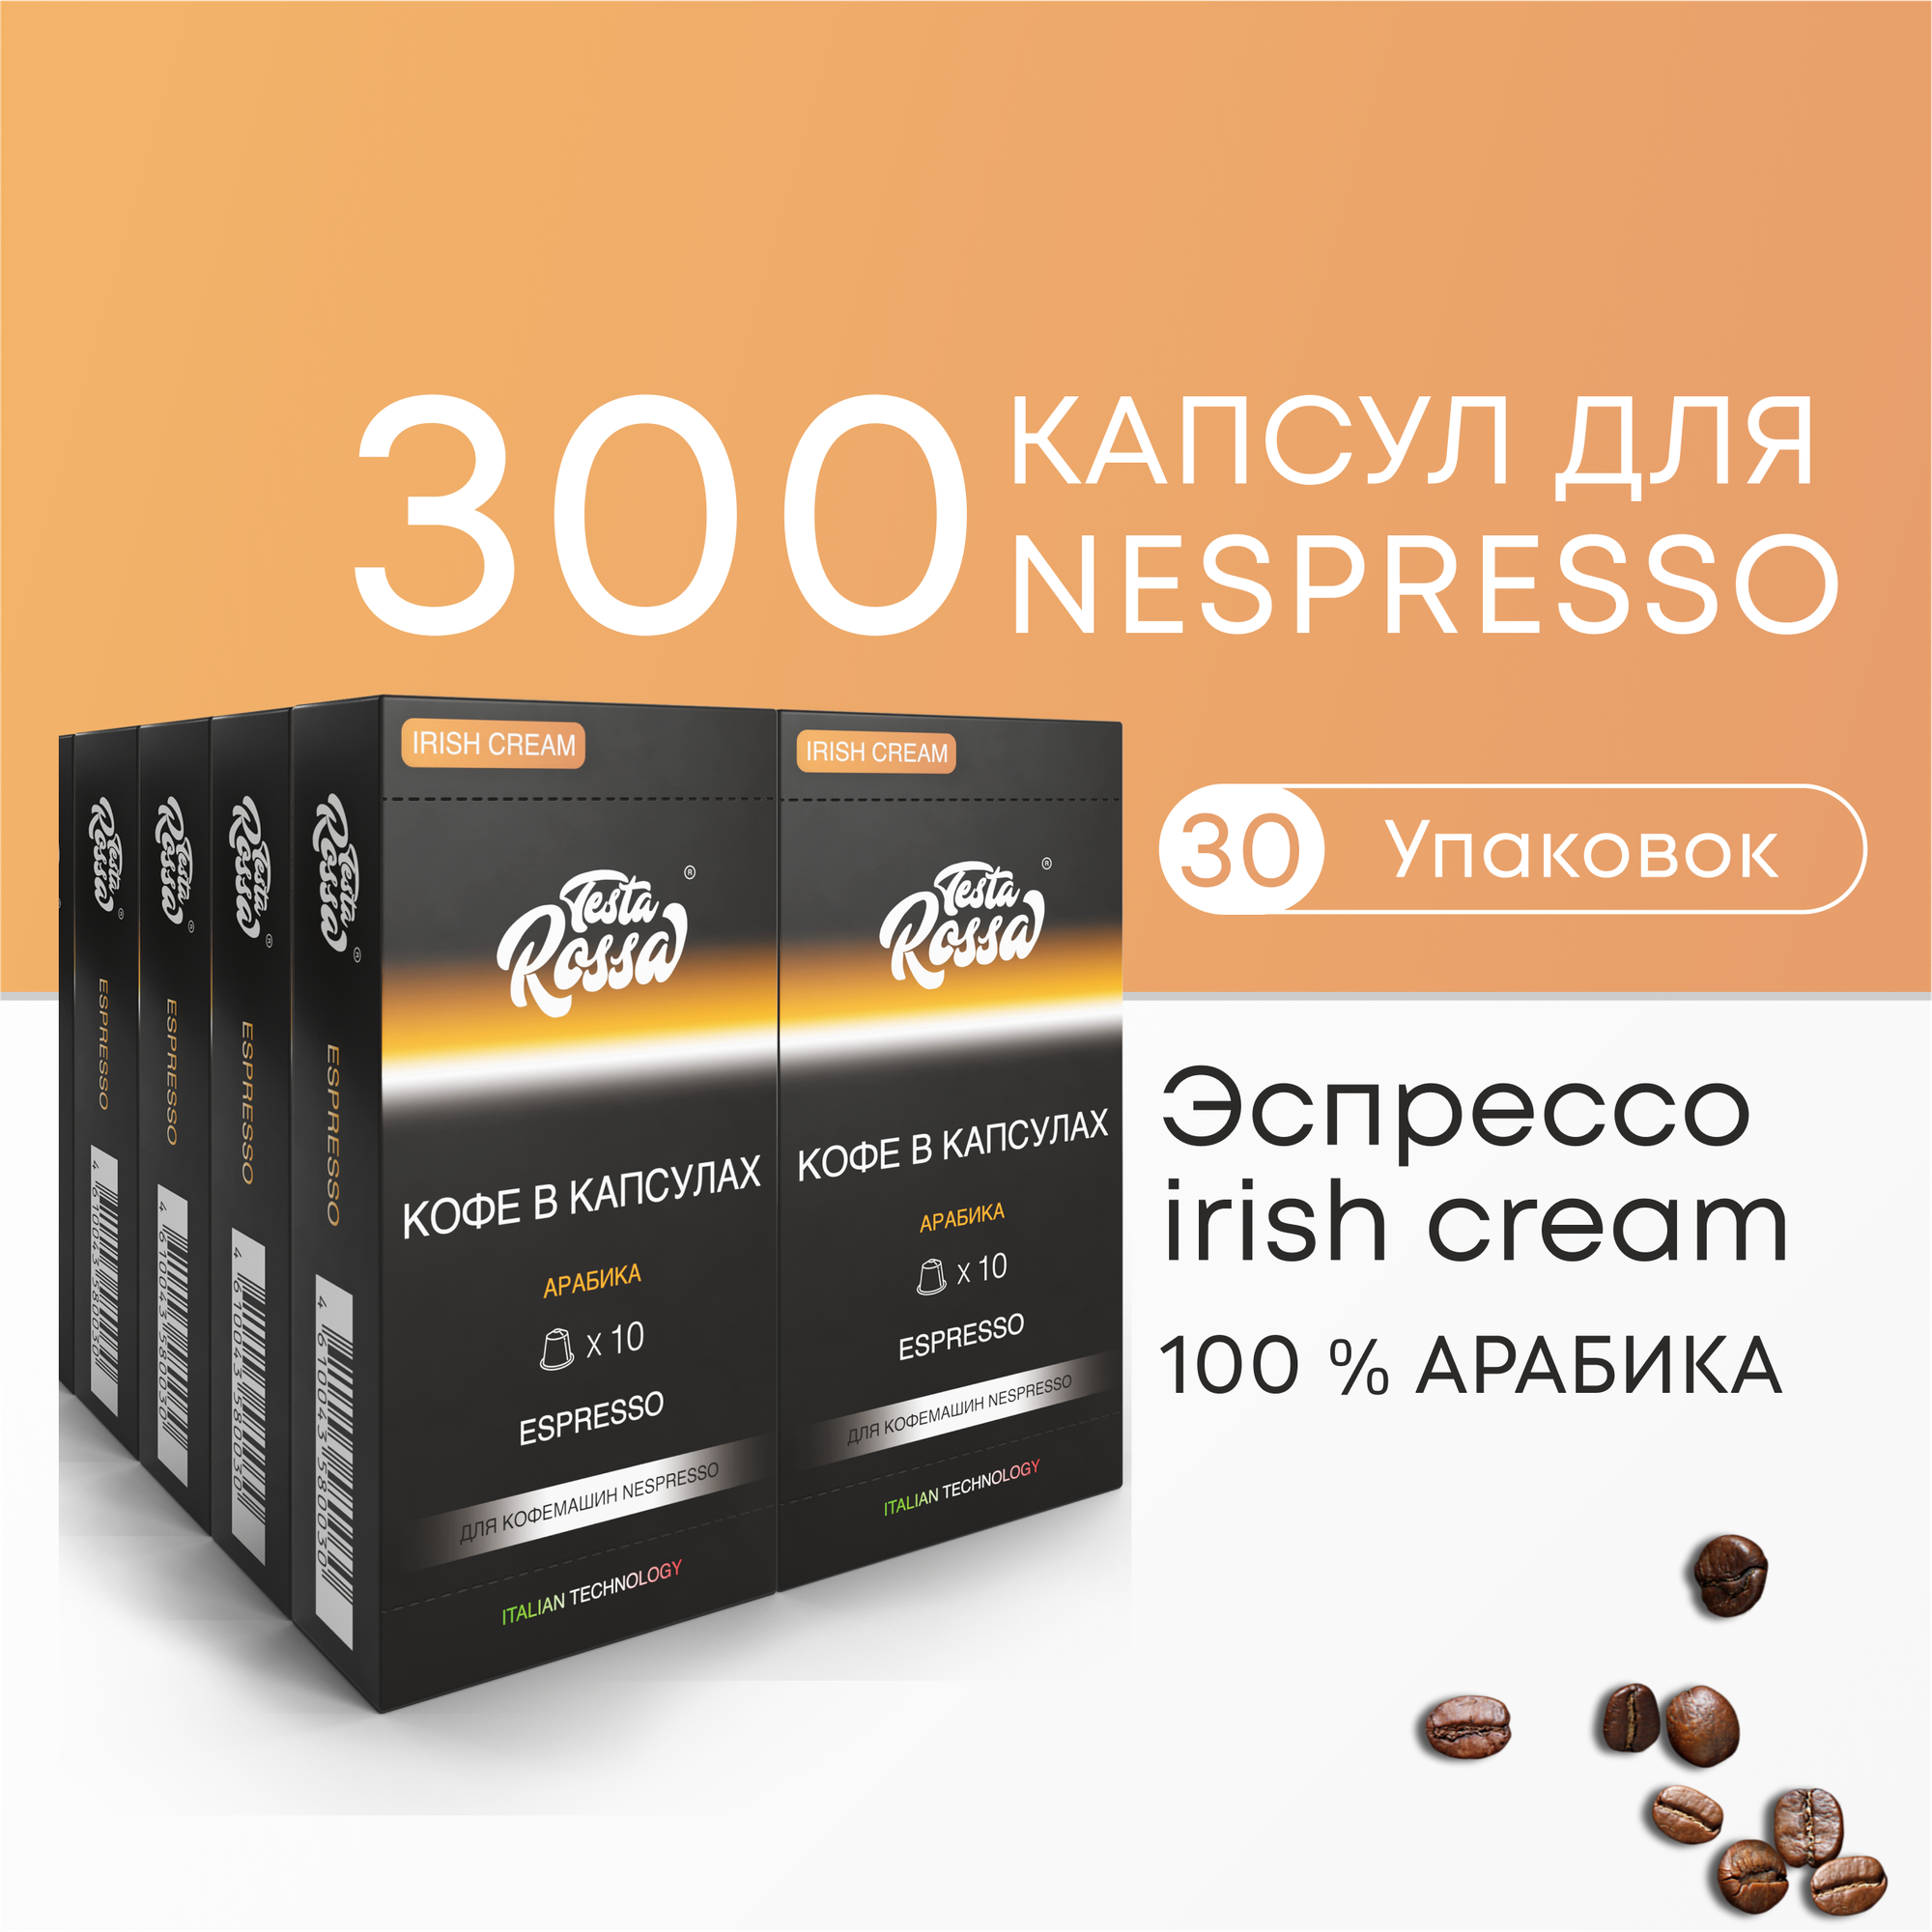 Эспрессо ирландский крем Арабика 100% - Капсулы Testa Rossa - 100 шт IRISH CREAM набор кофе в капсулах неспрессо для кофемашины NESPRESSO